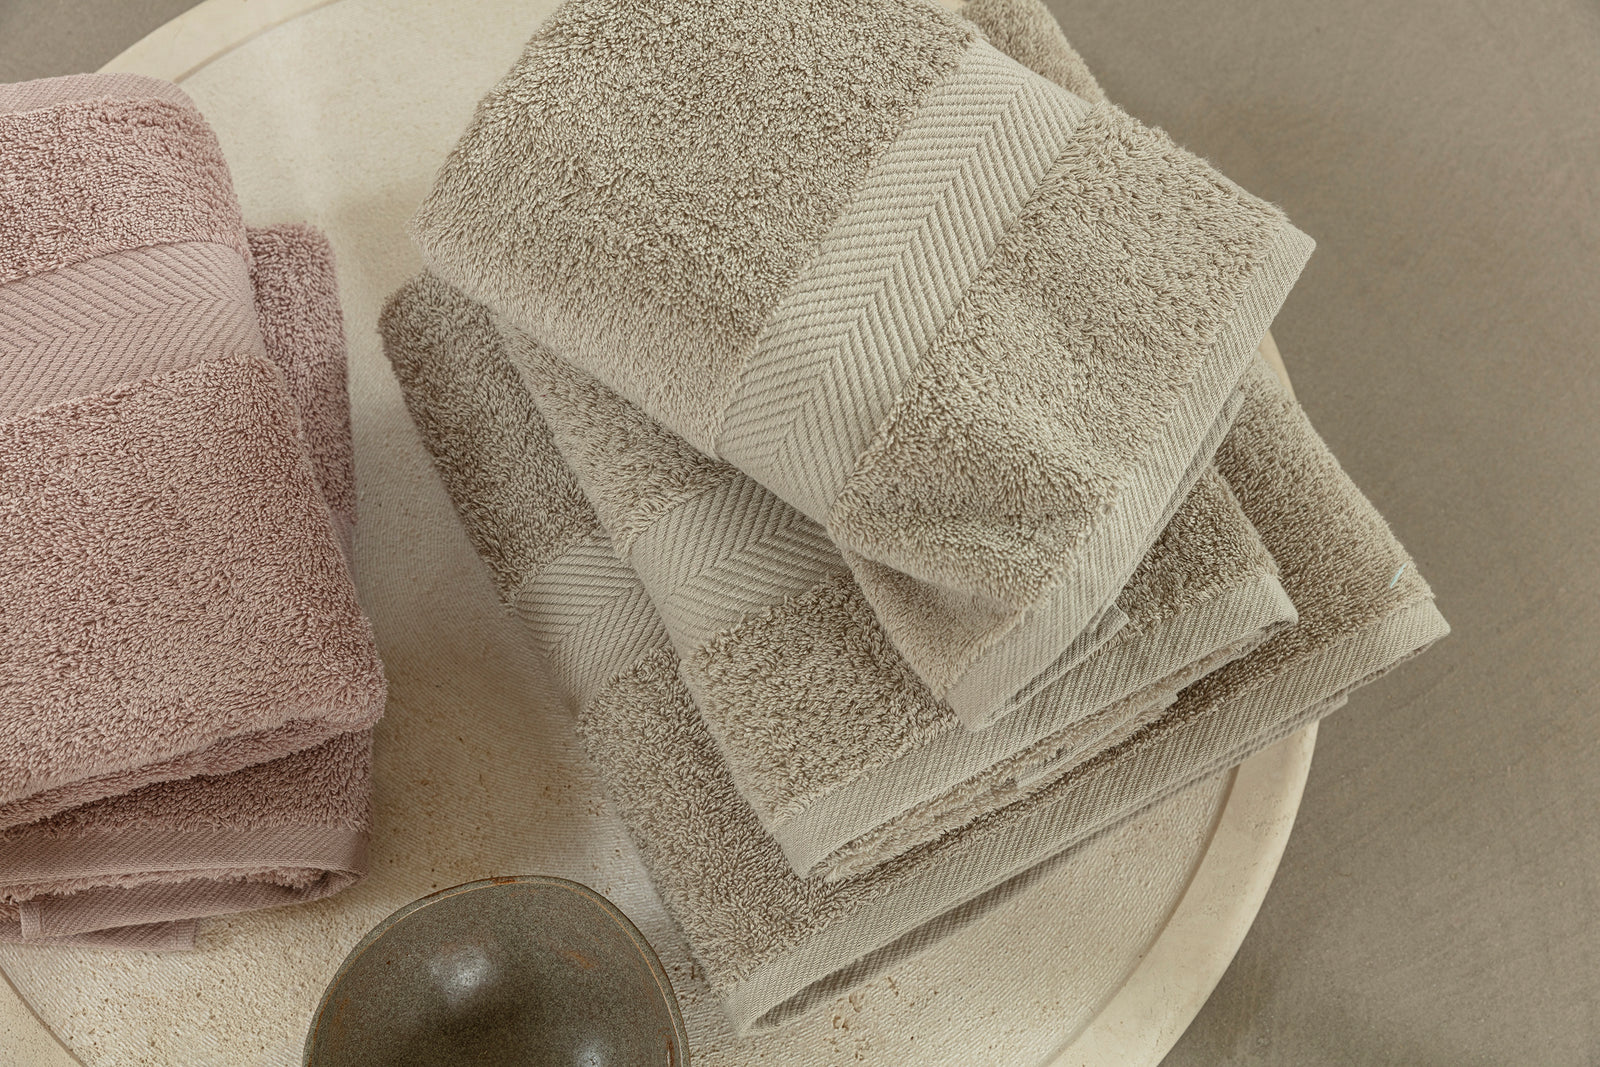 Hoe blijven mijn handdoeken langer mooi? Tips van experts